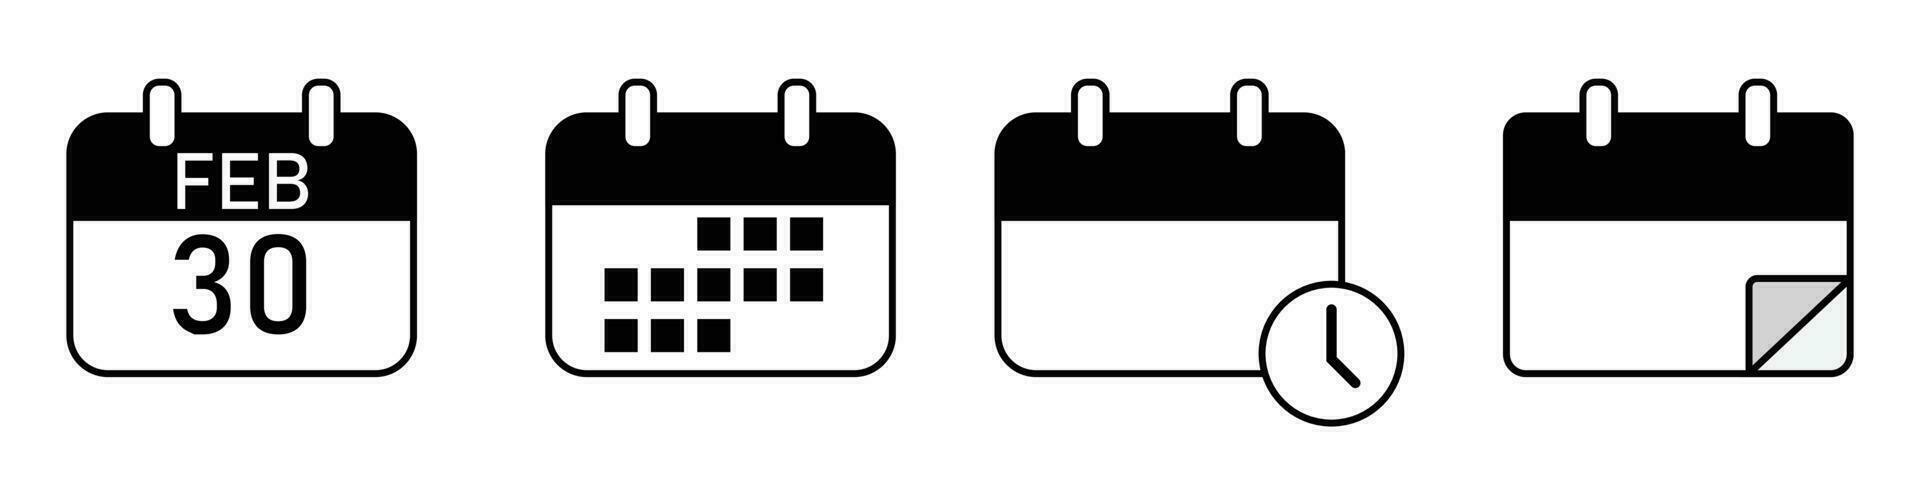 calendario icono fecha mes hora icono conjunto vector